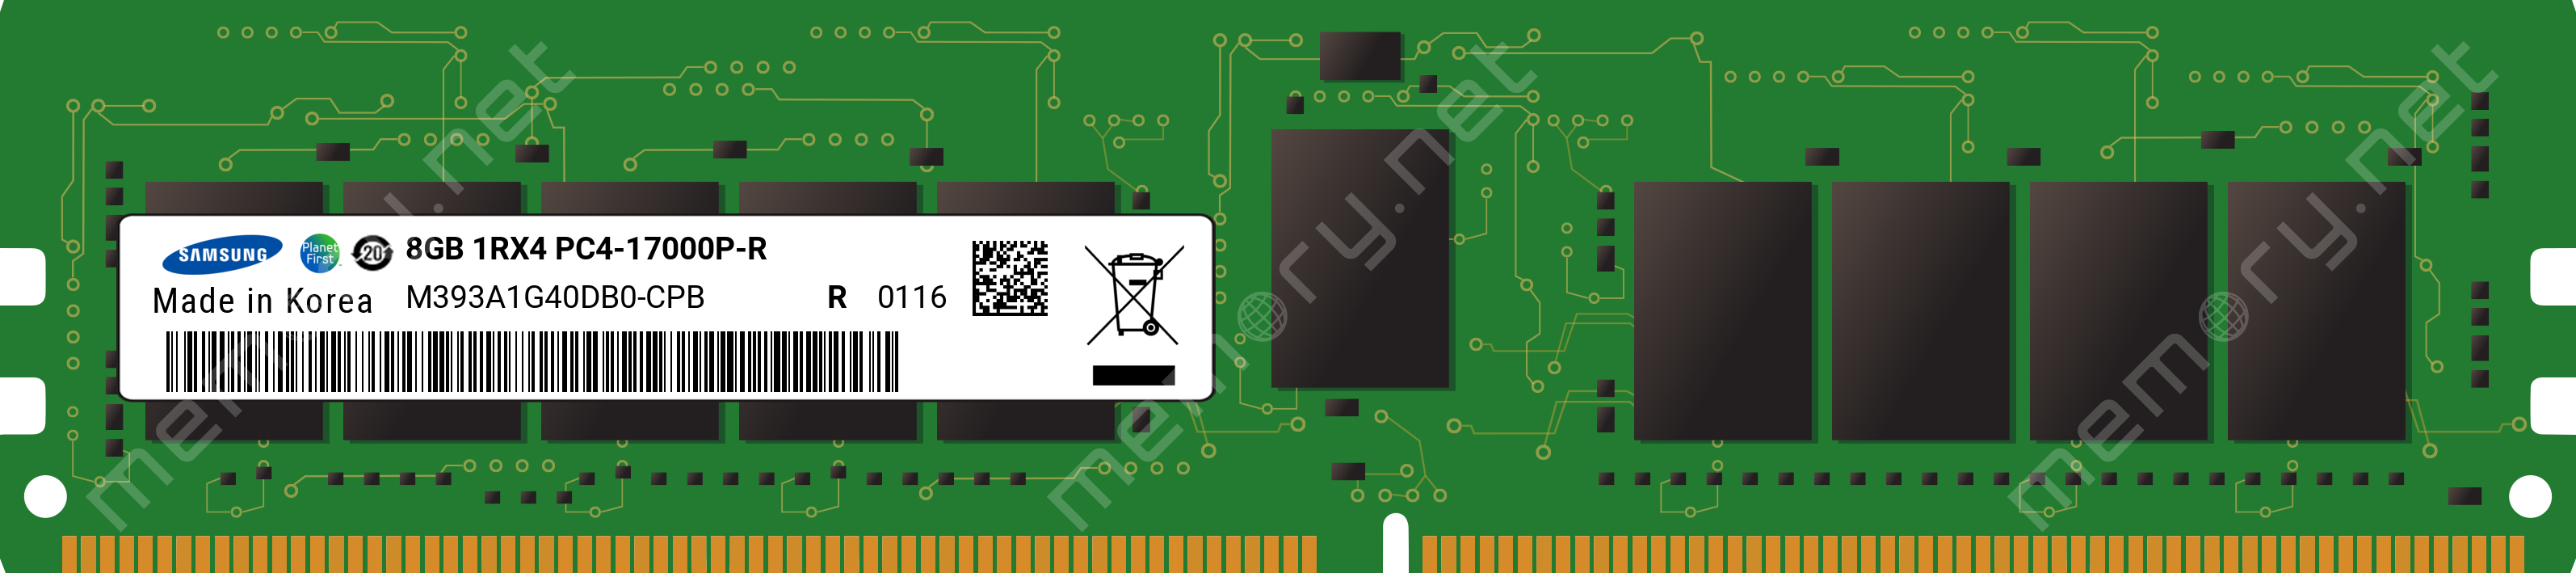 M393A1G40DB0-CPB - Samsung 1x 8GB DDR4-2133 RDIMM PC4-17000P-R Single Rank  x4 Module